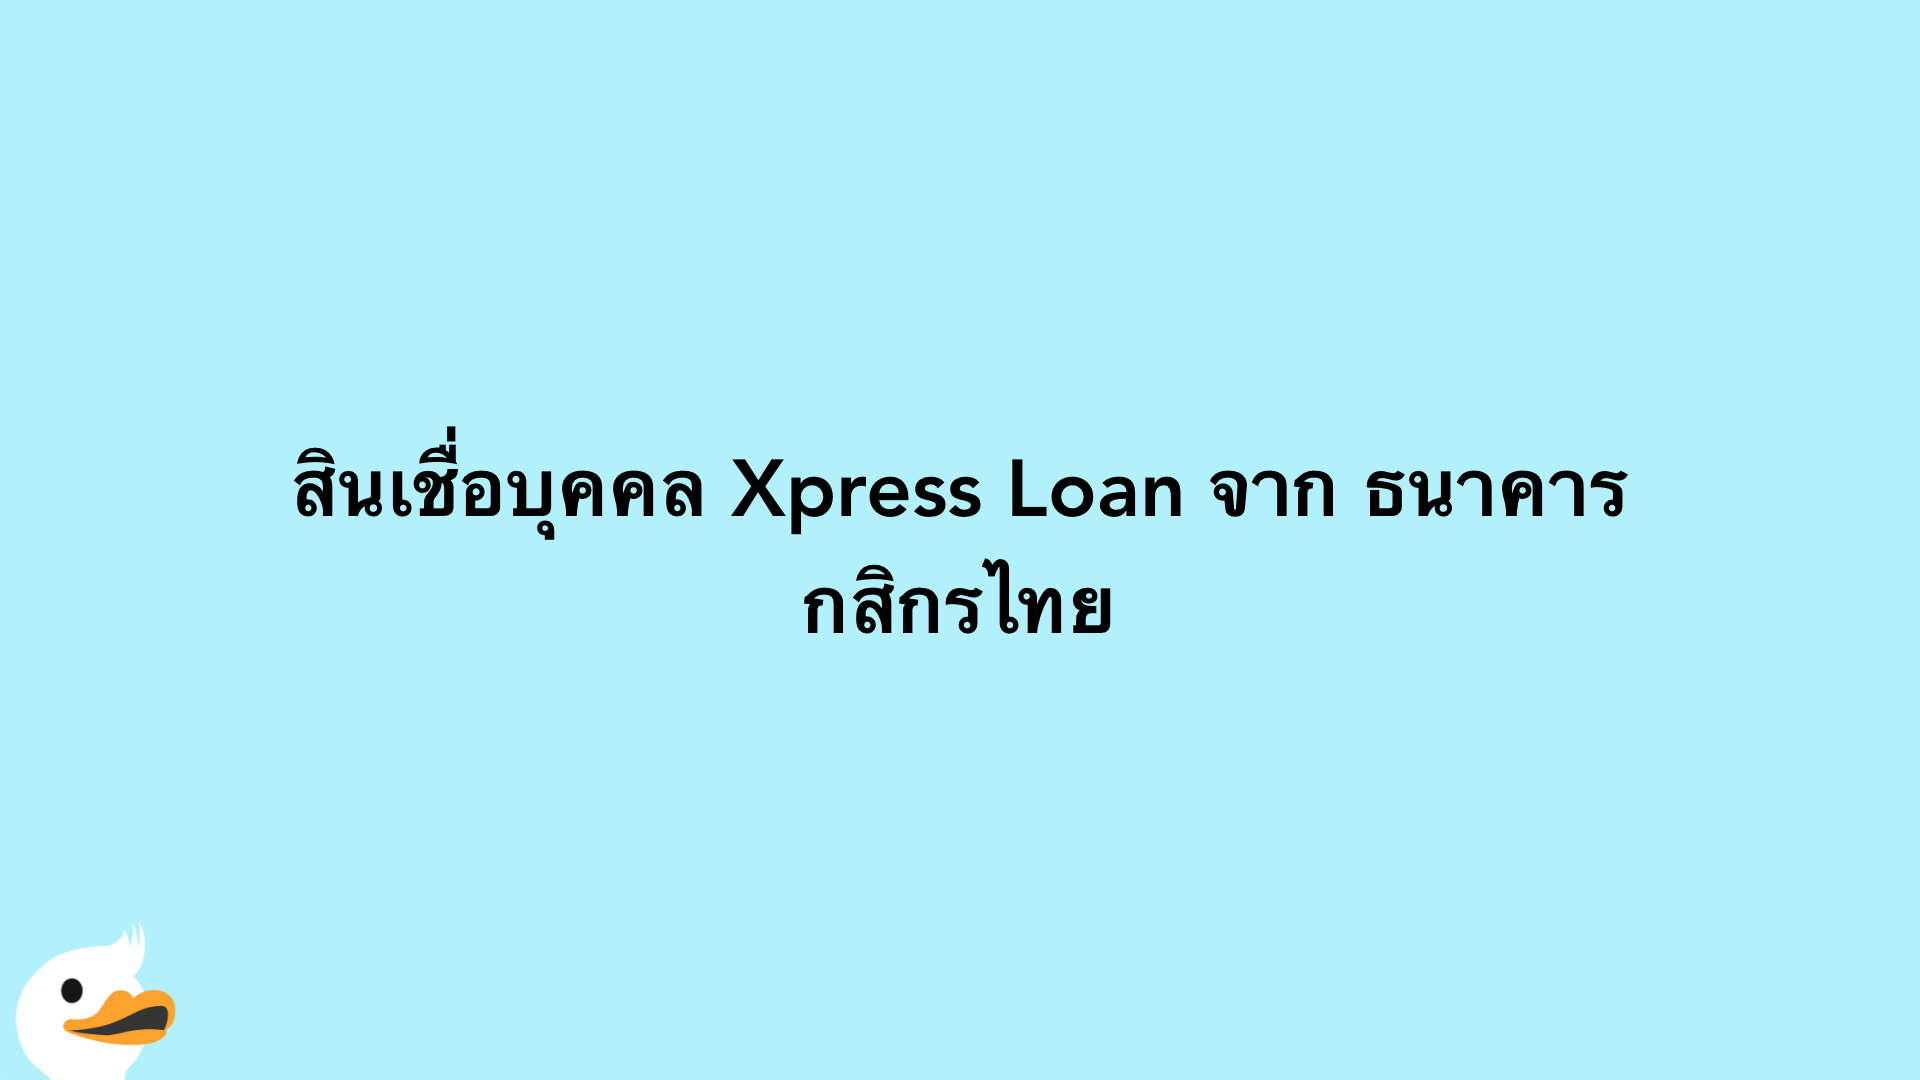 สินเชื่อบุคคล Xpress Loan จาก ธนาคารกสิกรไทย